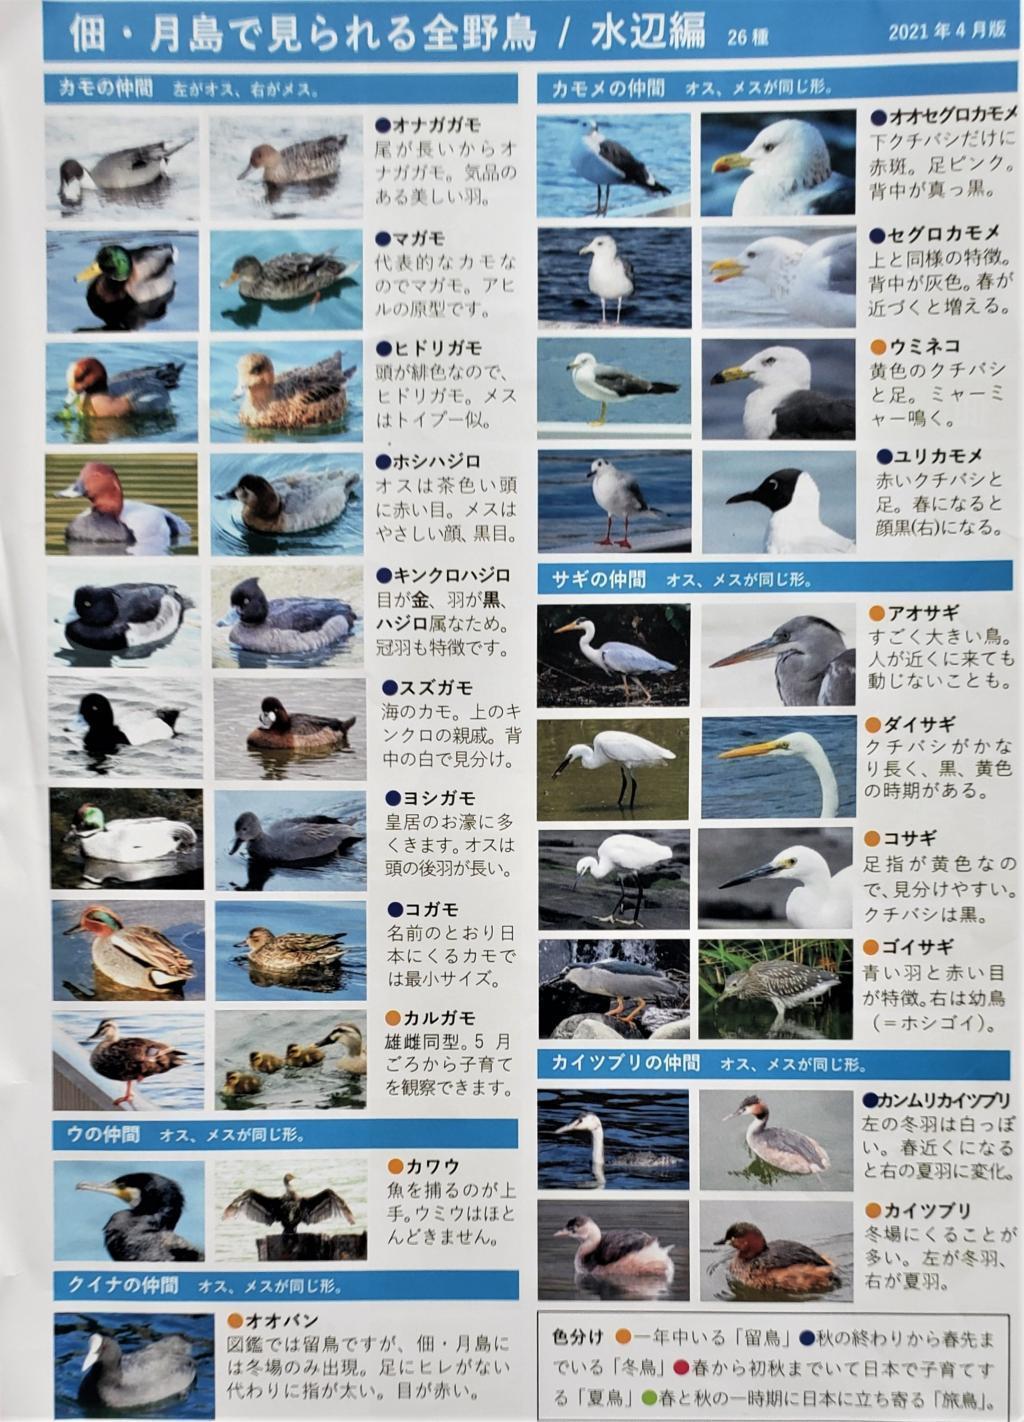  佃月島新聞「野鳥リスト」とても役に立ちました。